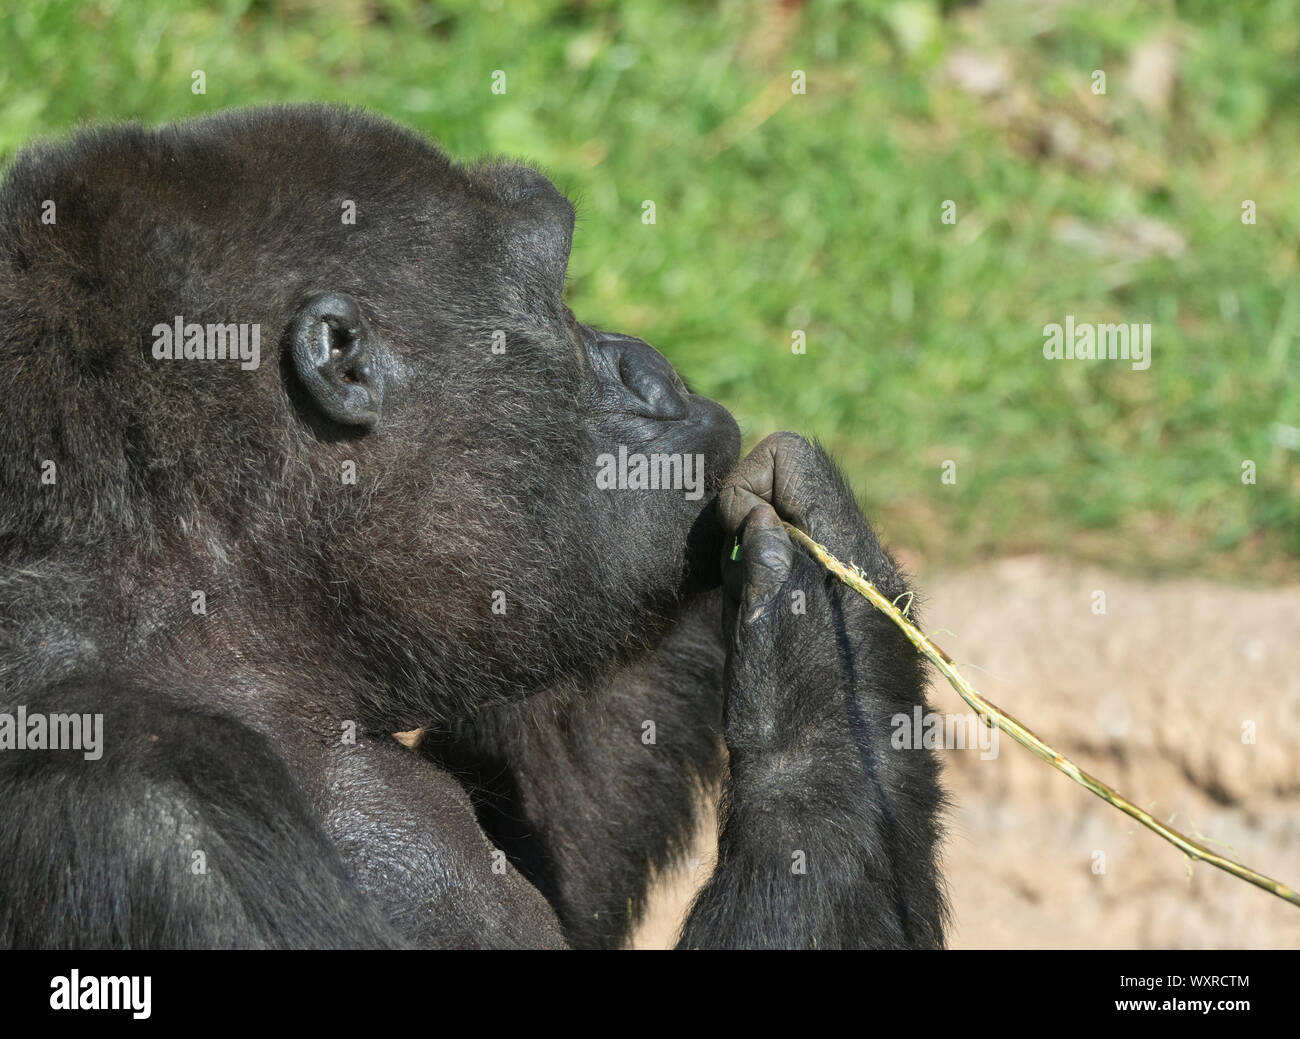 Gorila de montaña se sienta y come con la rama de un árbol. Foto de stock